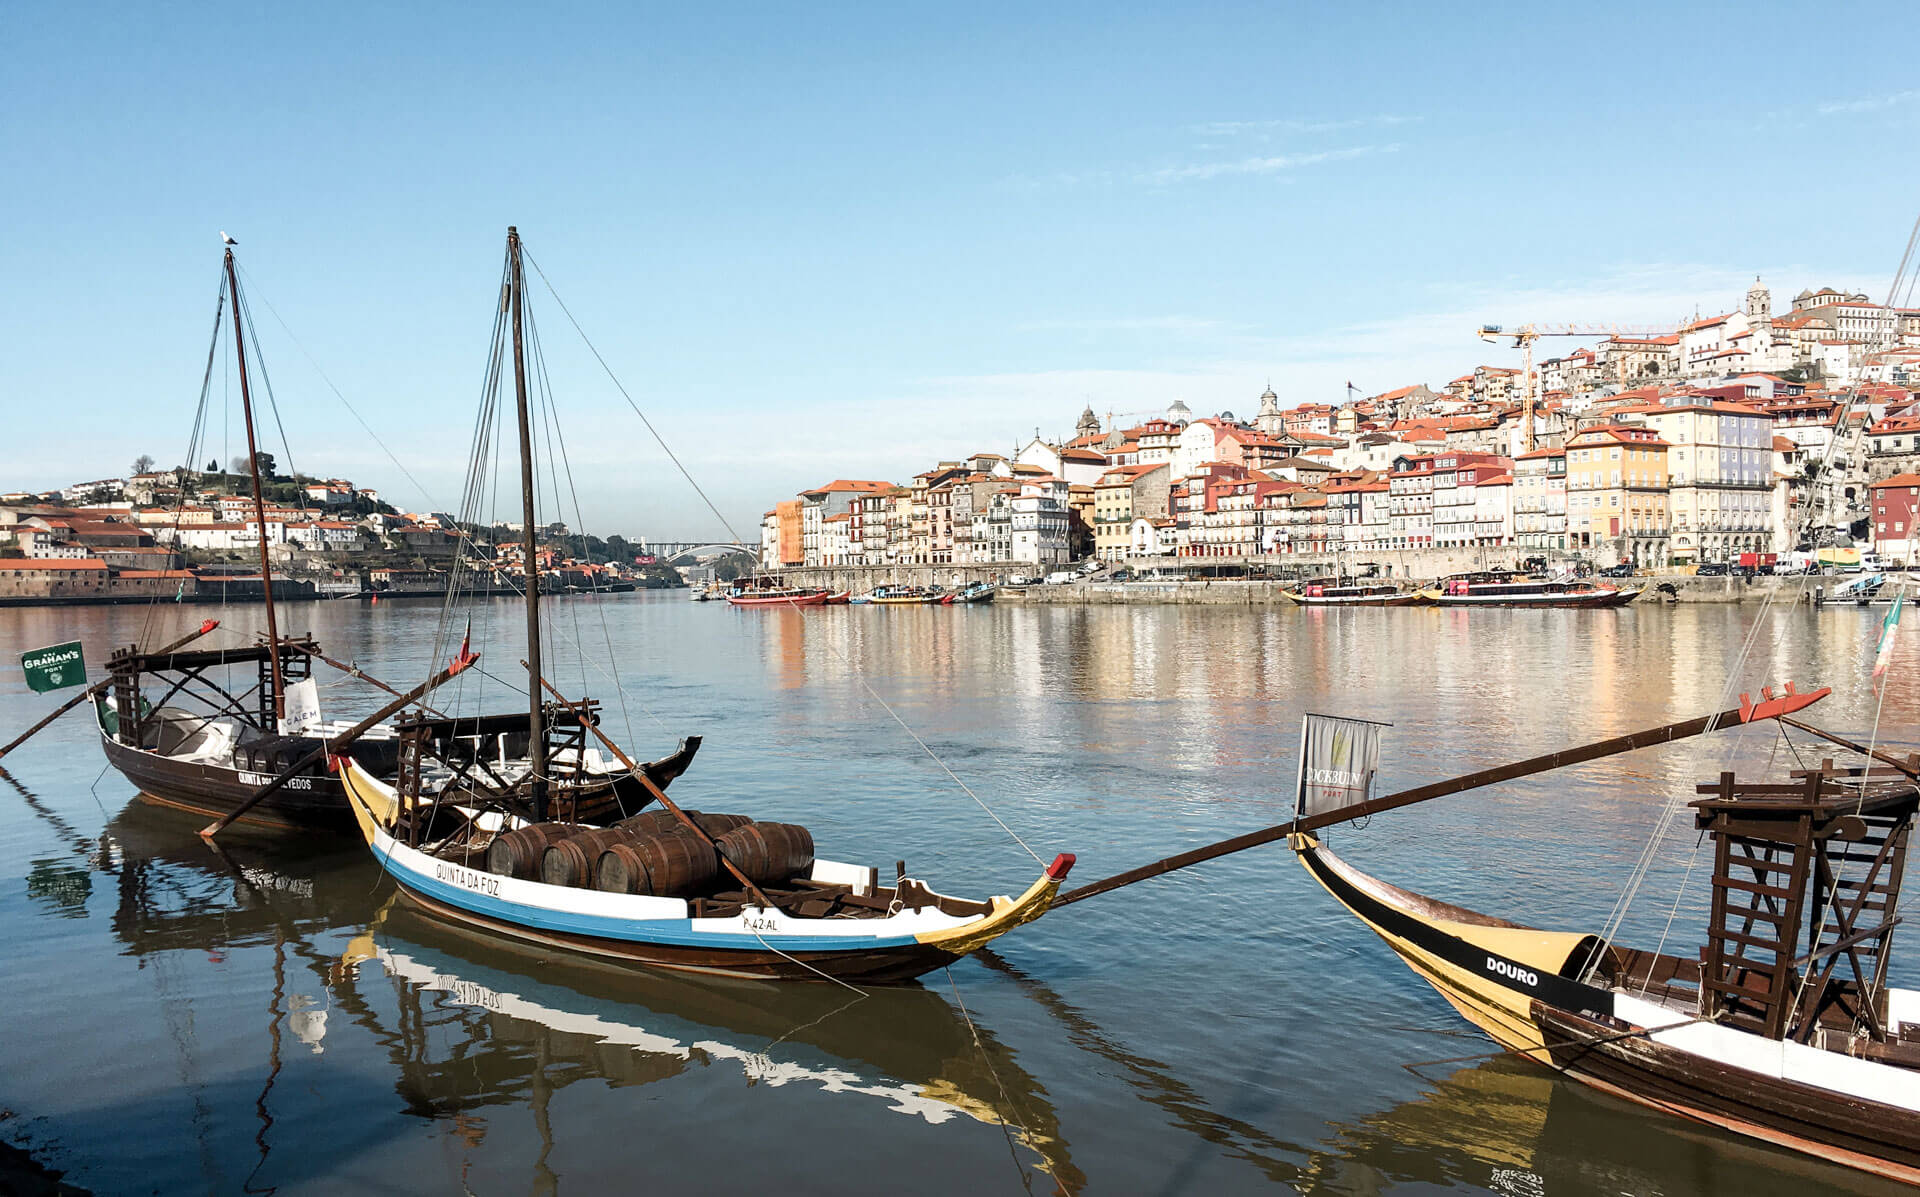 River Douro, Porto, Portugal